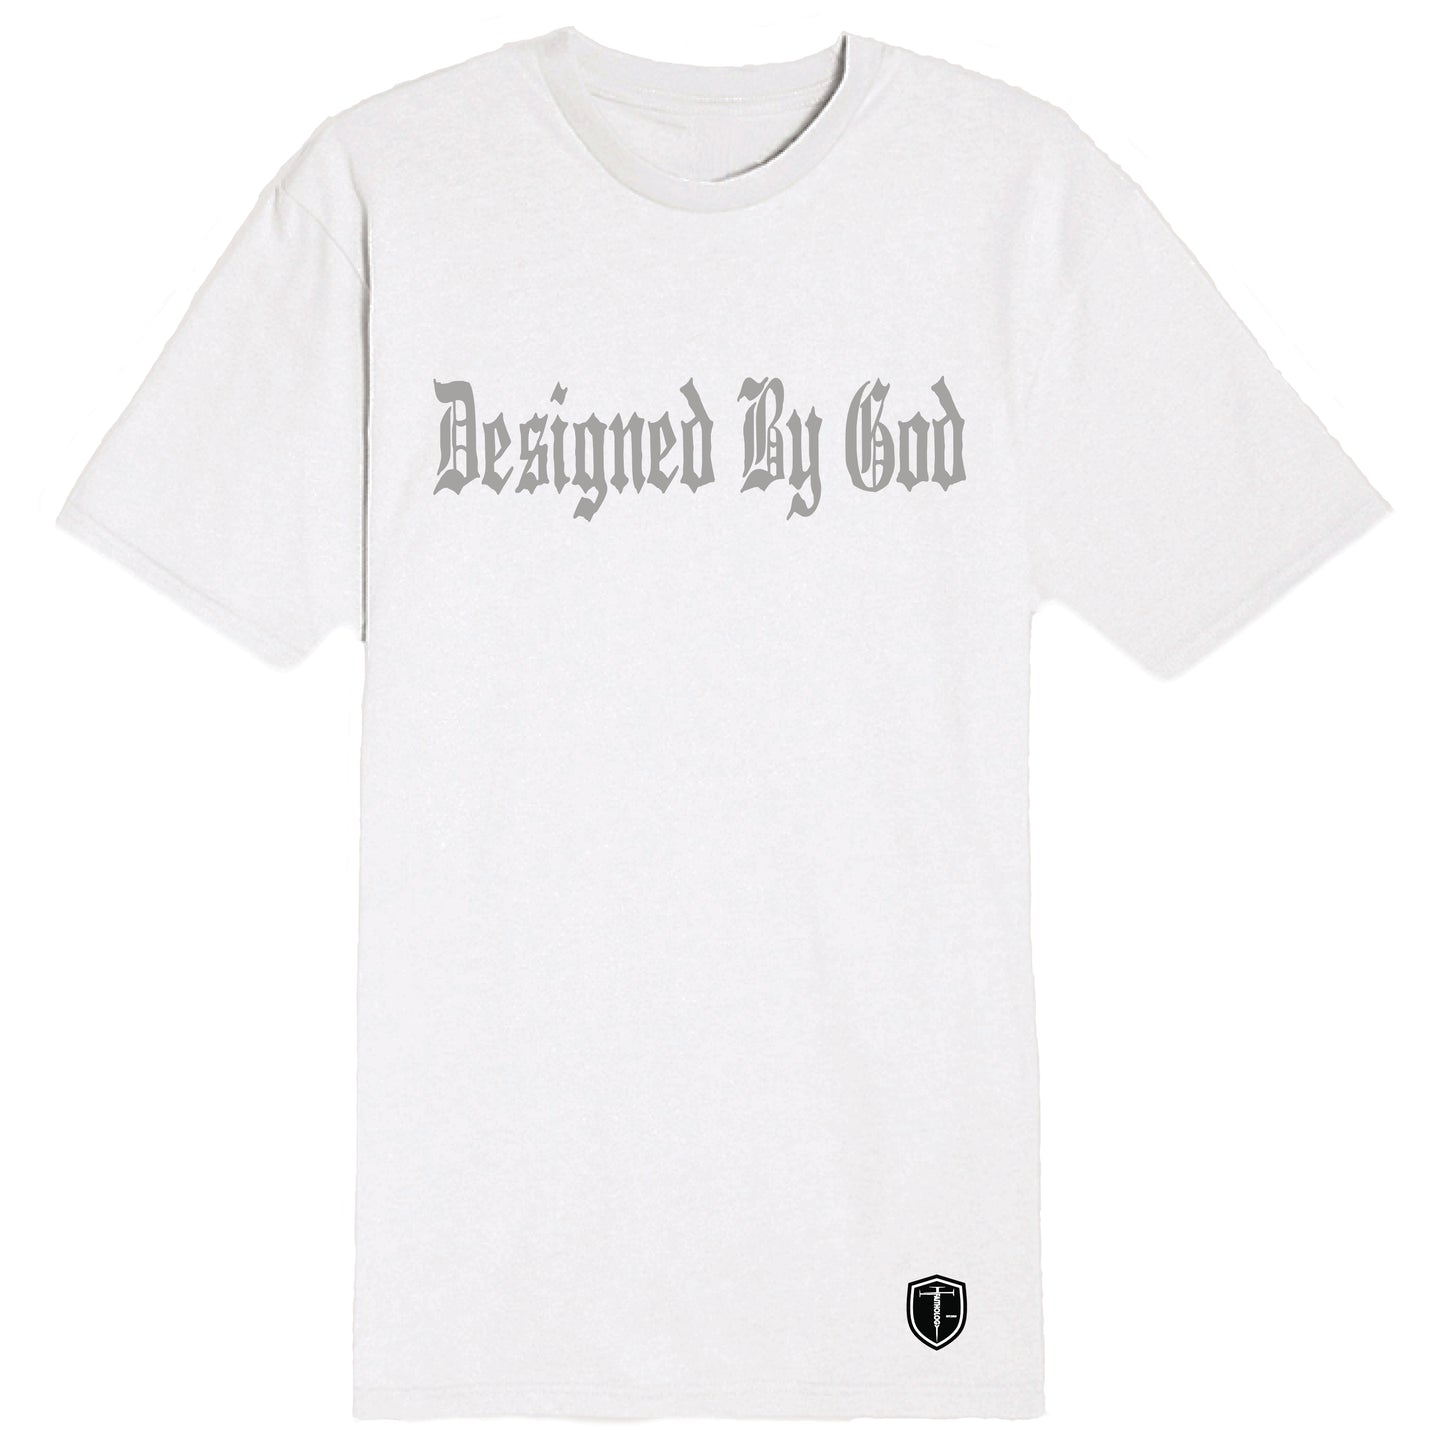 DESIGNED BY GOD (Black)